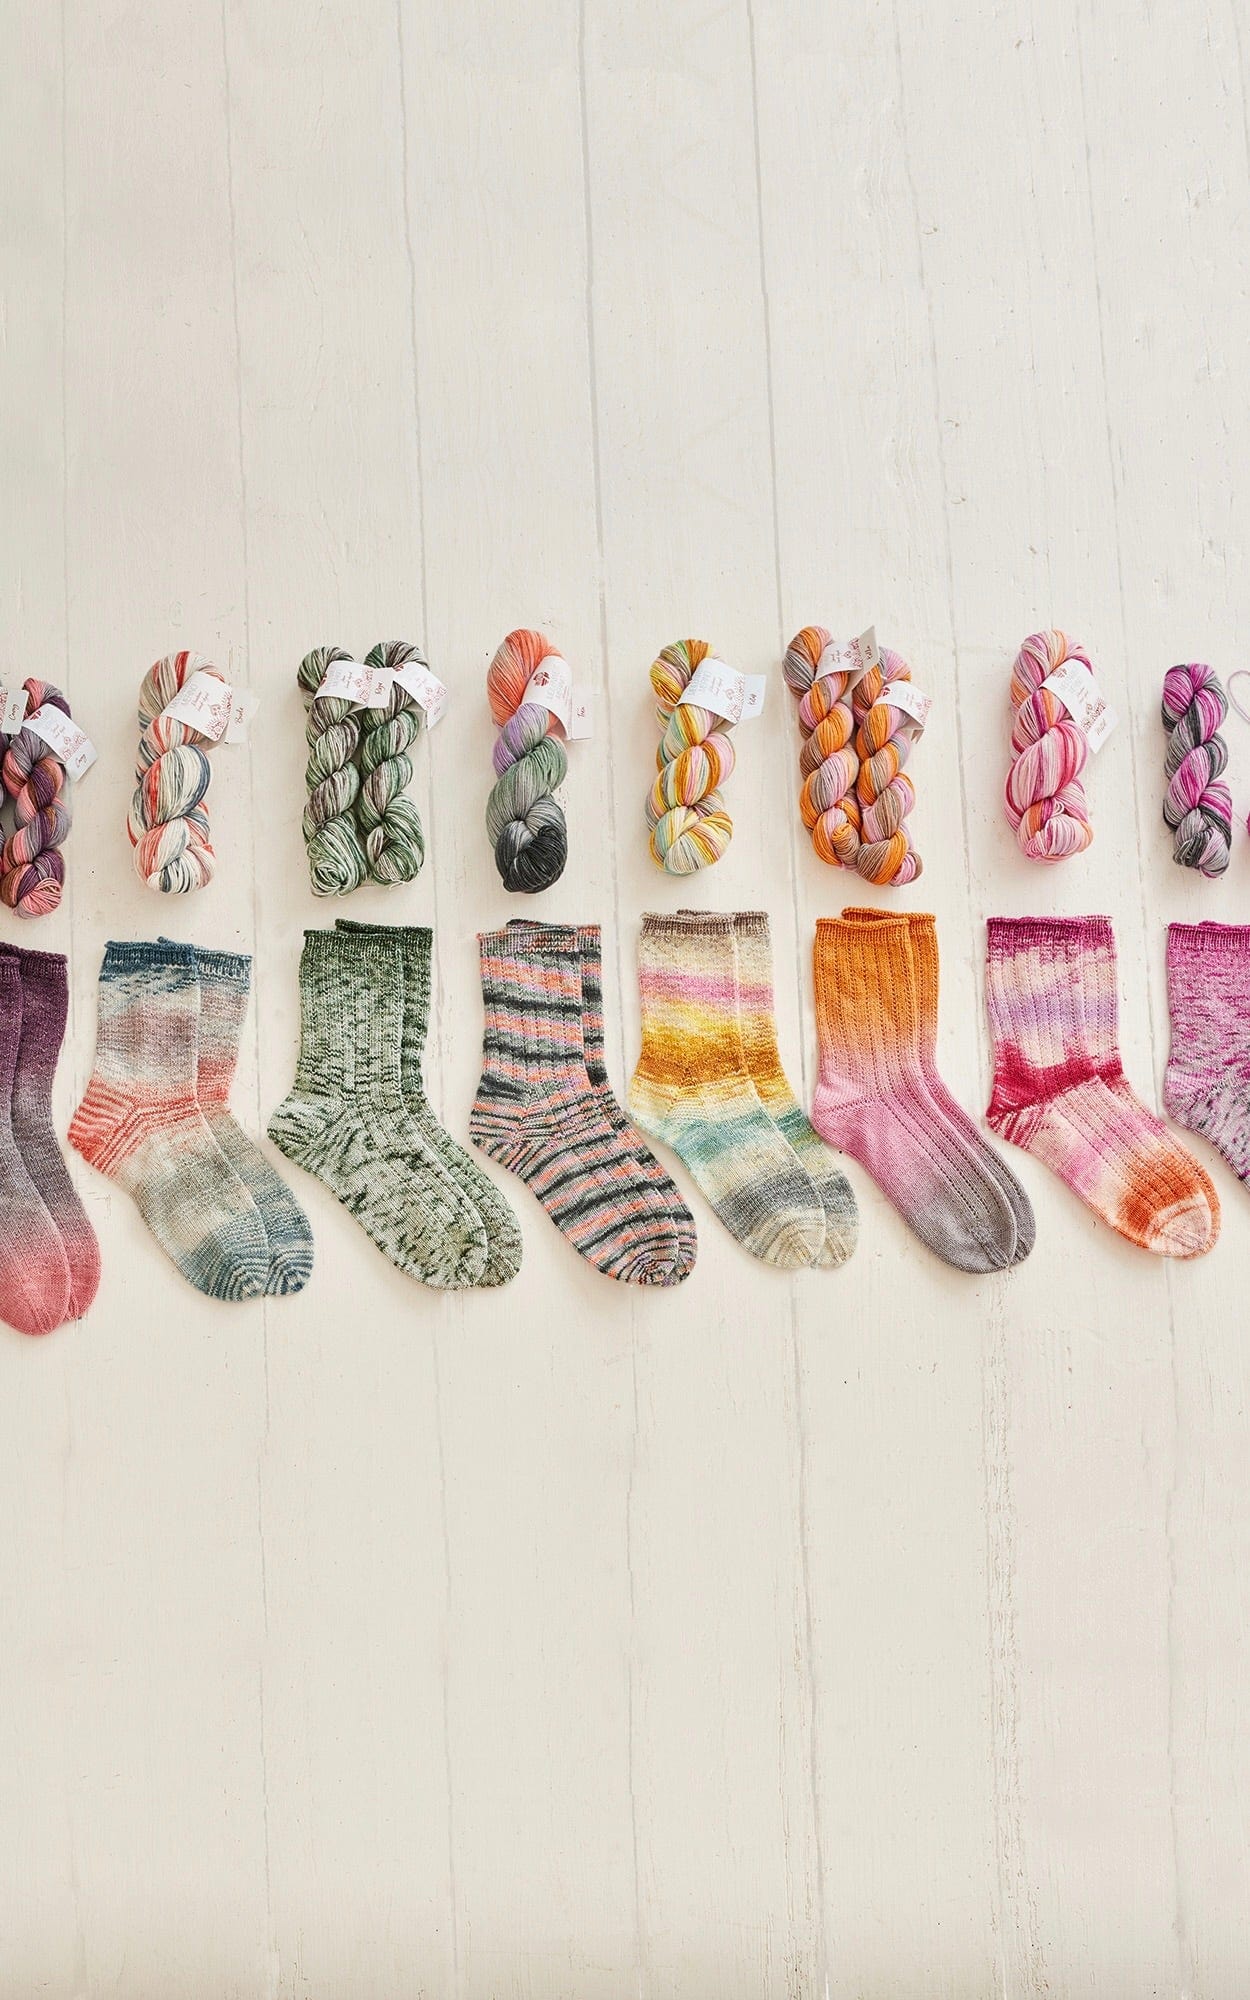 Socken mit Rippenmuster - MEILENWEIT 50 MERINO HAND-DYED - Strickset von LANA GROSSA jetzt online kaufen bei OONIQUE